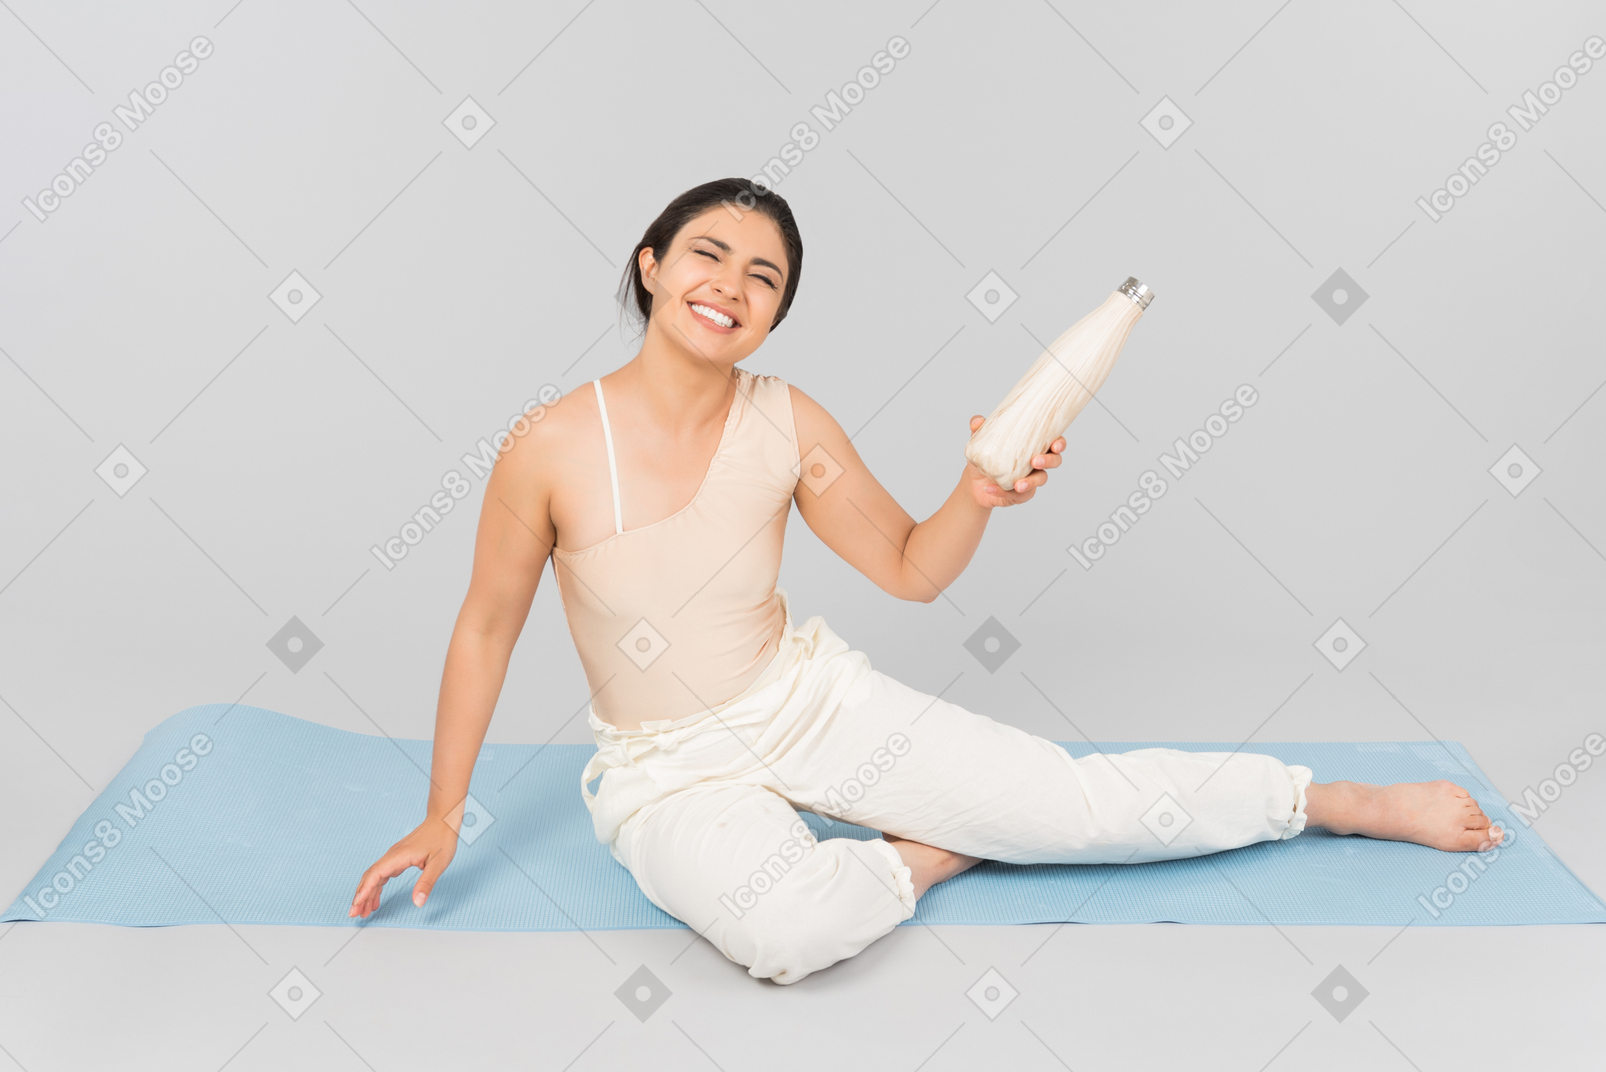 Junge indische frau, die auf yogamatte sitzt und sportflasche hält